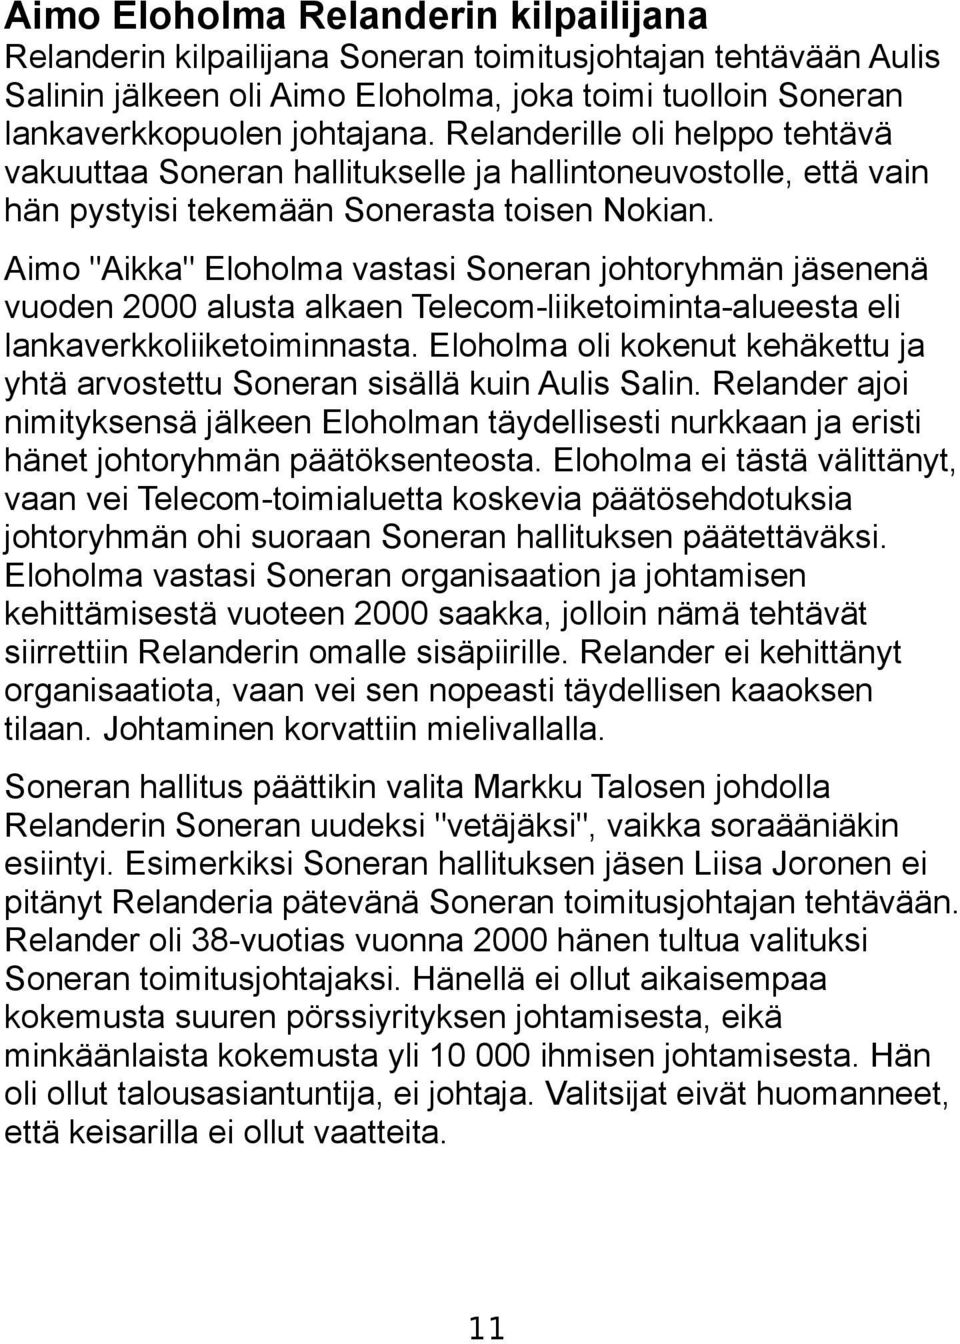 Aimo "Aikka" Eloholma vastasi Soneran johtoryhmän jäsenenä vuoden 2000 alusta alkaen Telecom-liiketoiminta-alueesta eli lankaverkkoliiketoiminnasta.